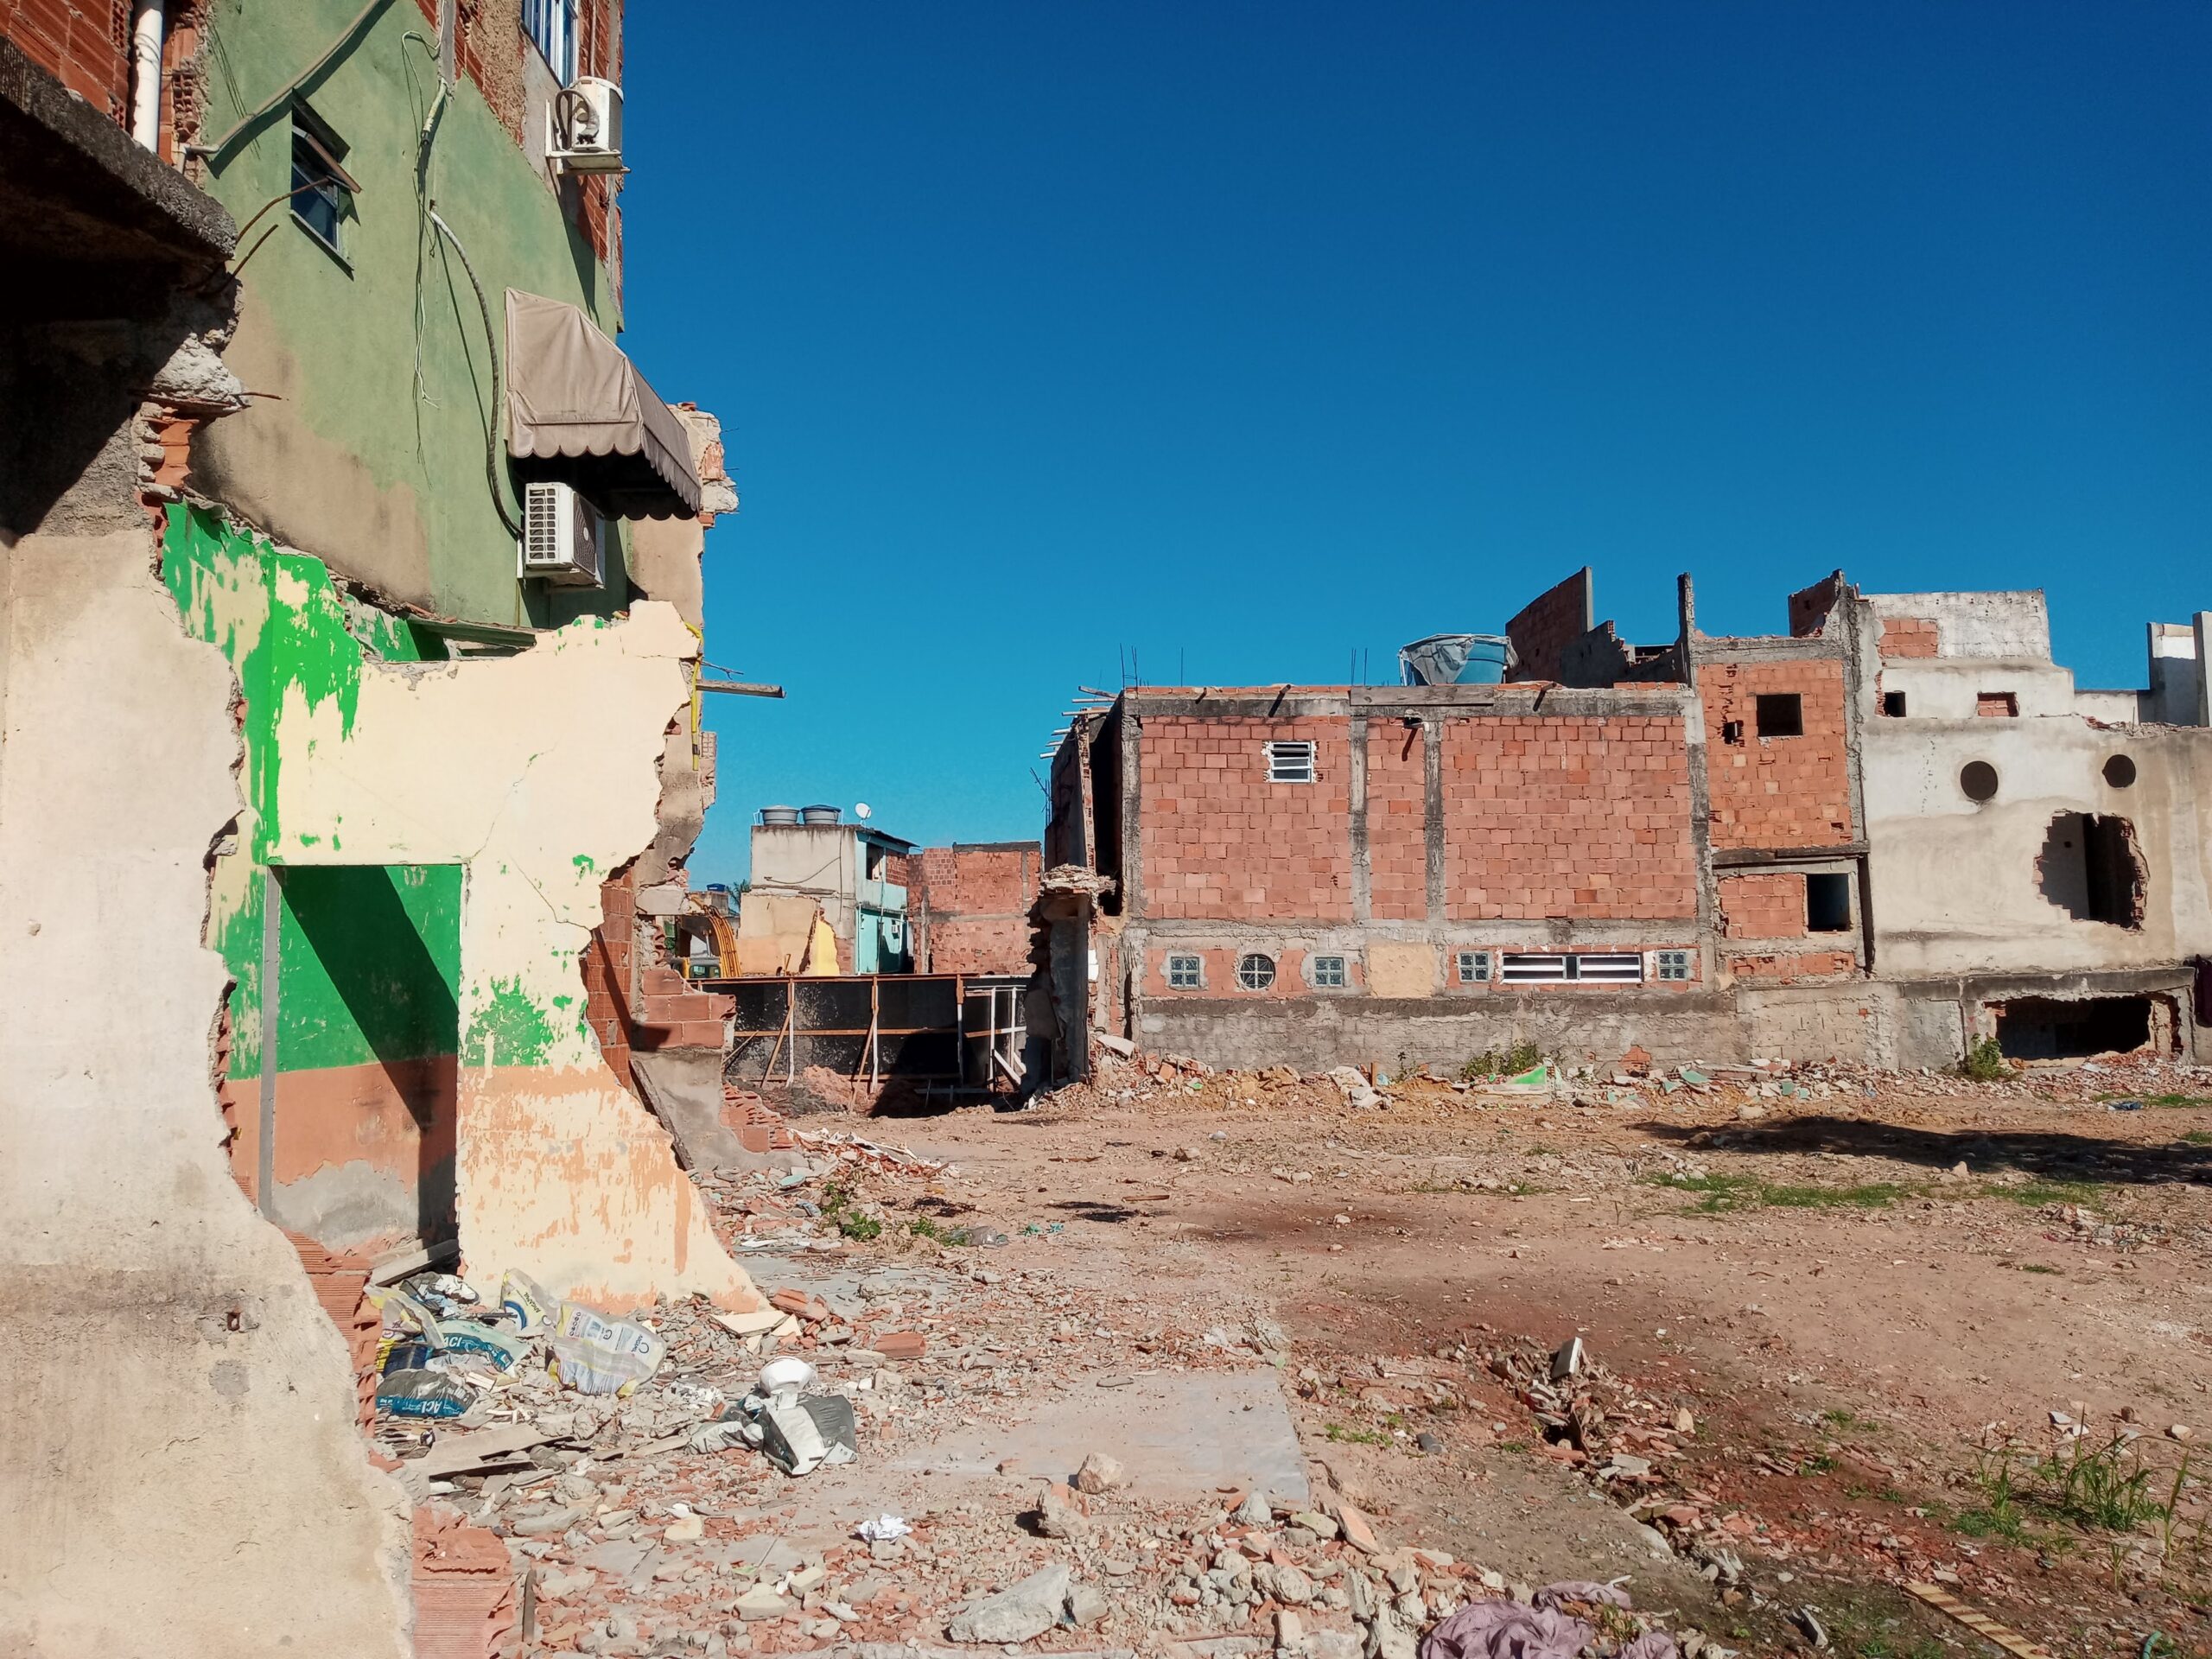 House demolitions create a scenario reminiscent of war. Photo: Fabio Leon